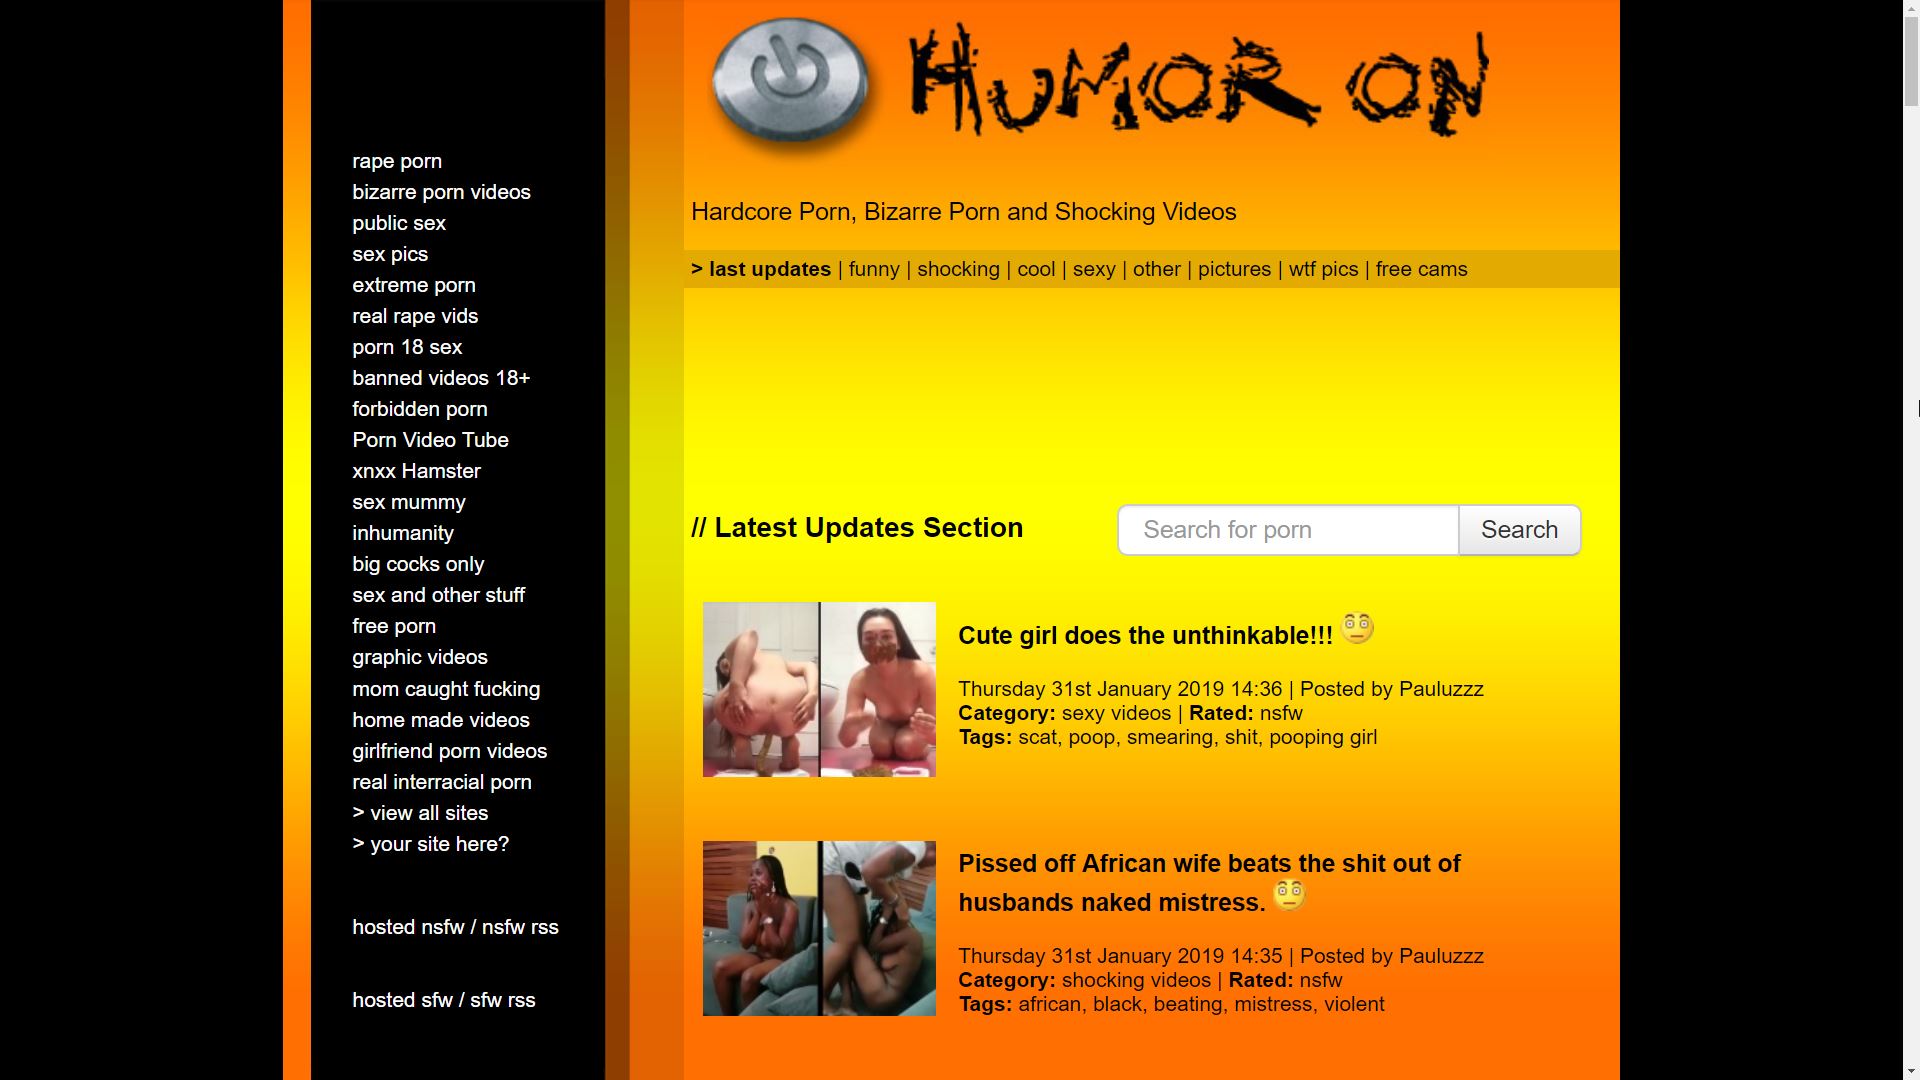 HumorOn (HumorOn.com) Bizarre Funny Porn Videos - Mr. Porn Geek